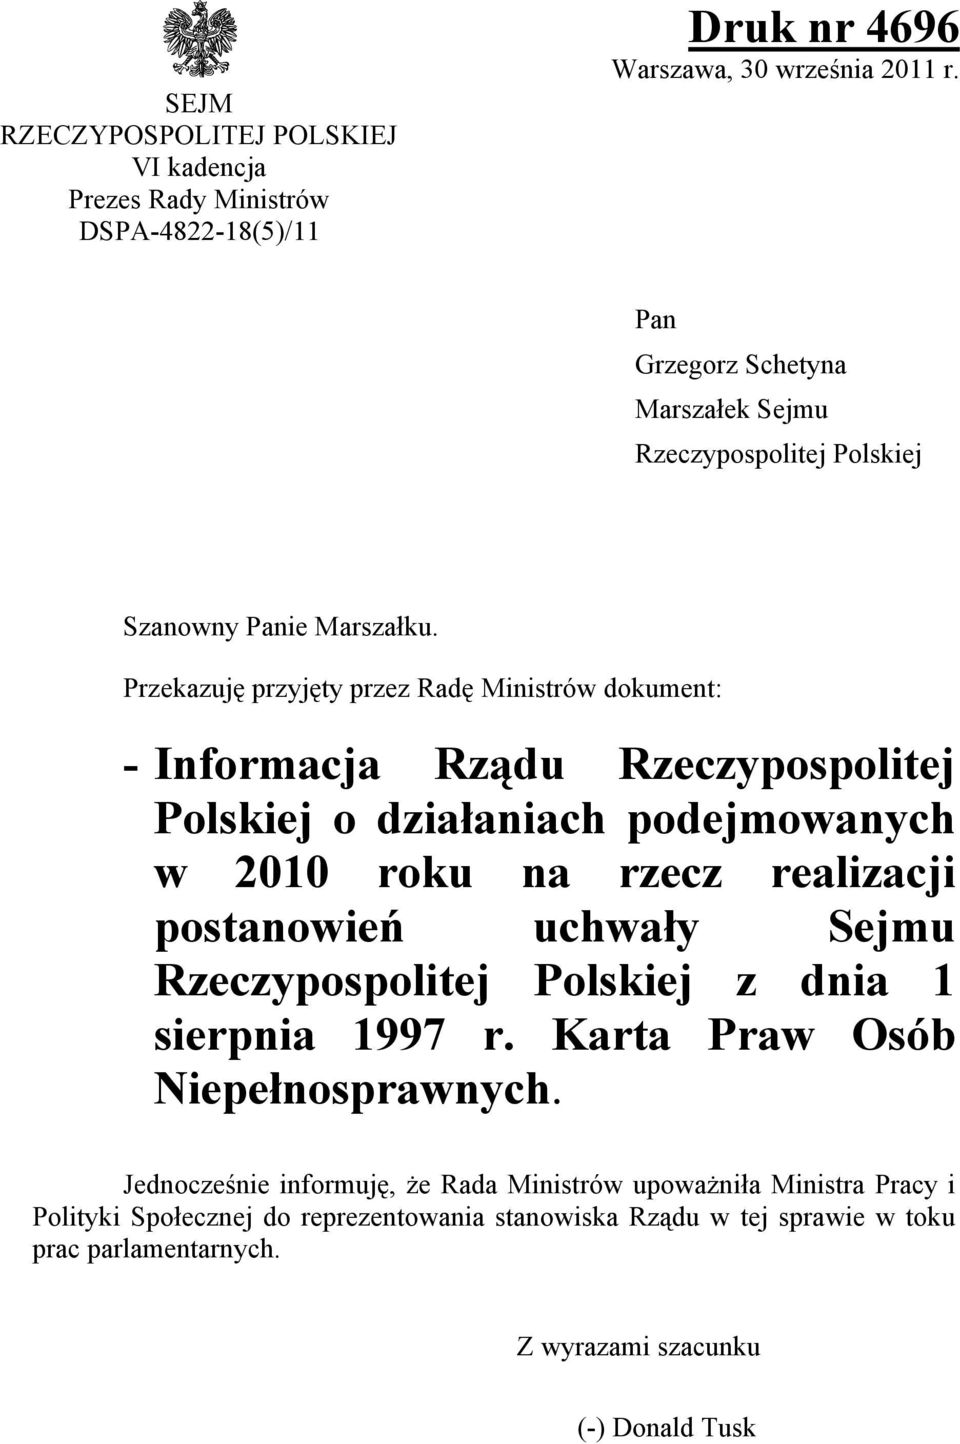 Przekazuję przyjęty przez Radę Ministrów dokument: - Informacja Rządu Rzeczypospolitej Polskiej o działaniach podejmowanych w 2010 roku na rzecz realizacji postanowień